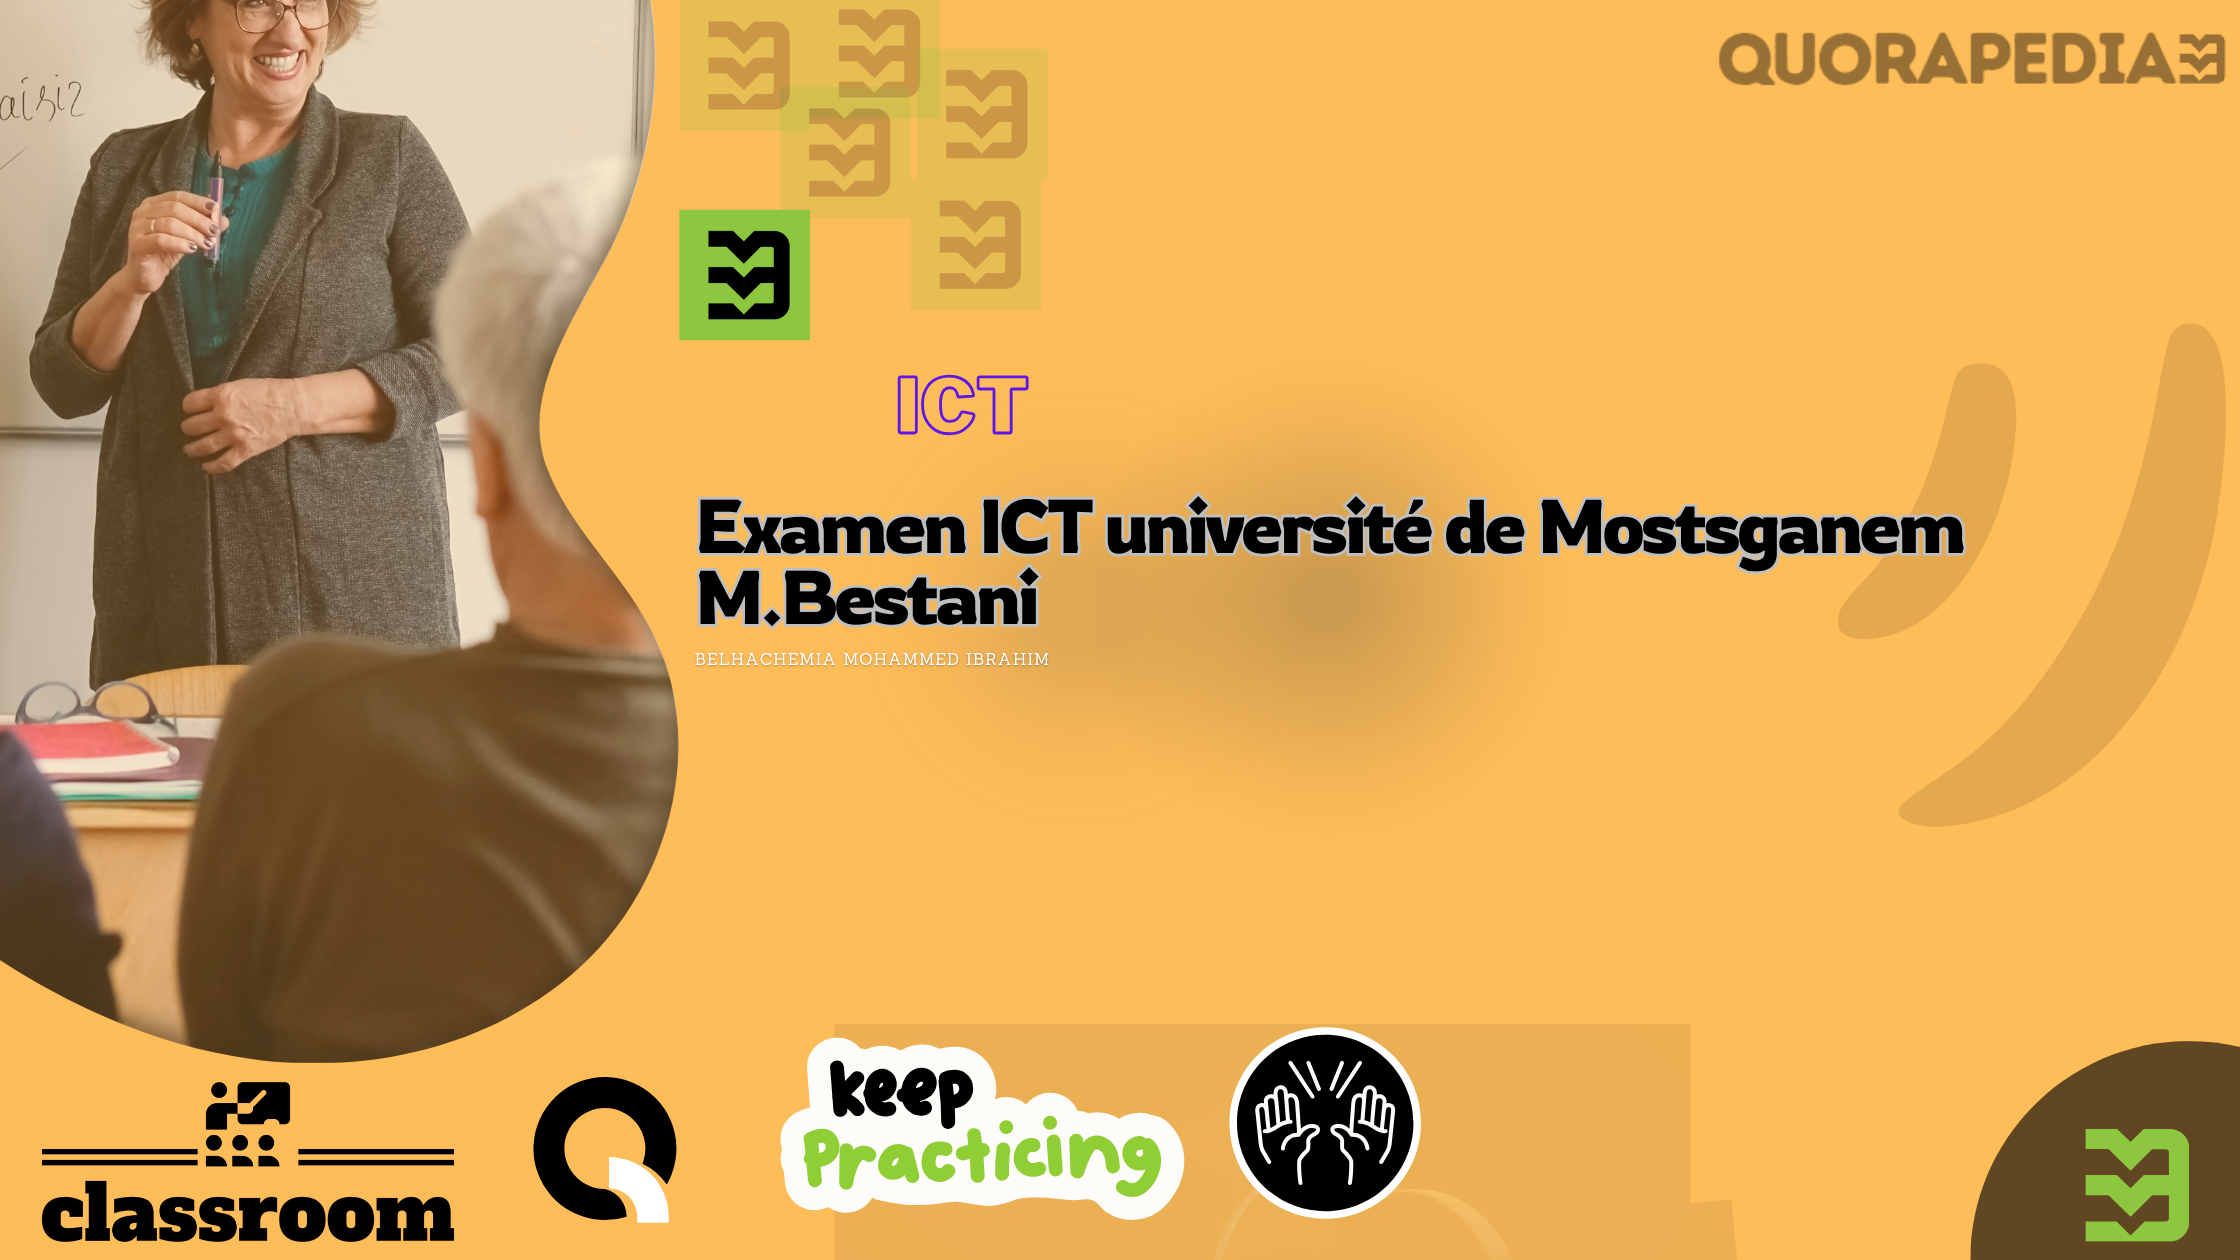 Examen ICT université de Mostsganem M.Bestani